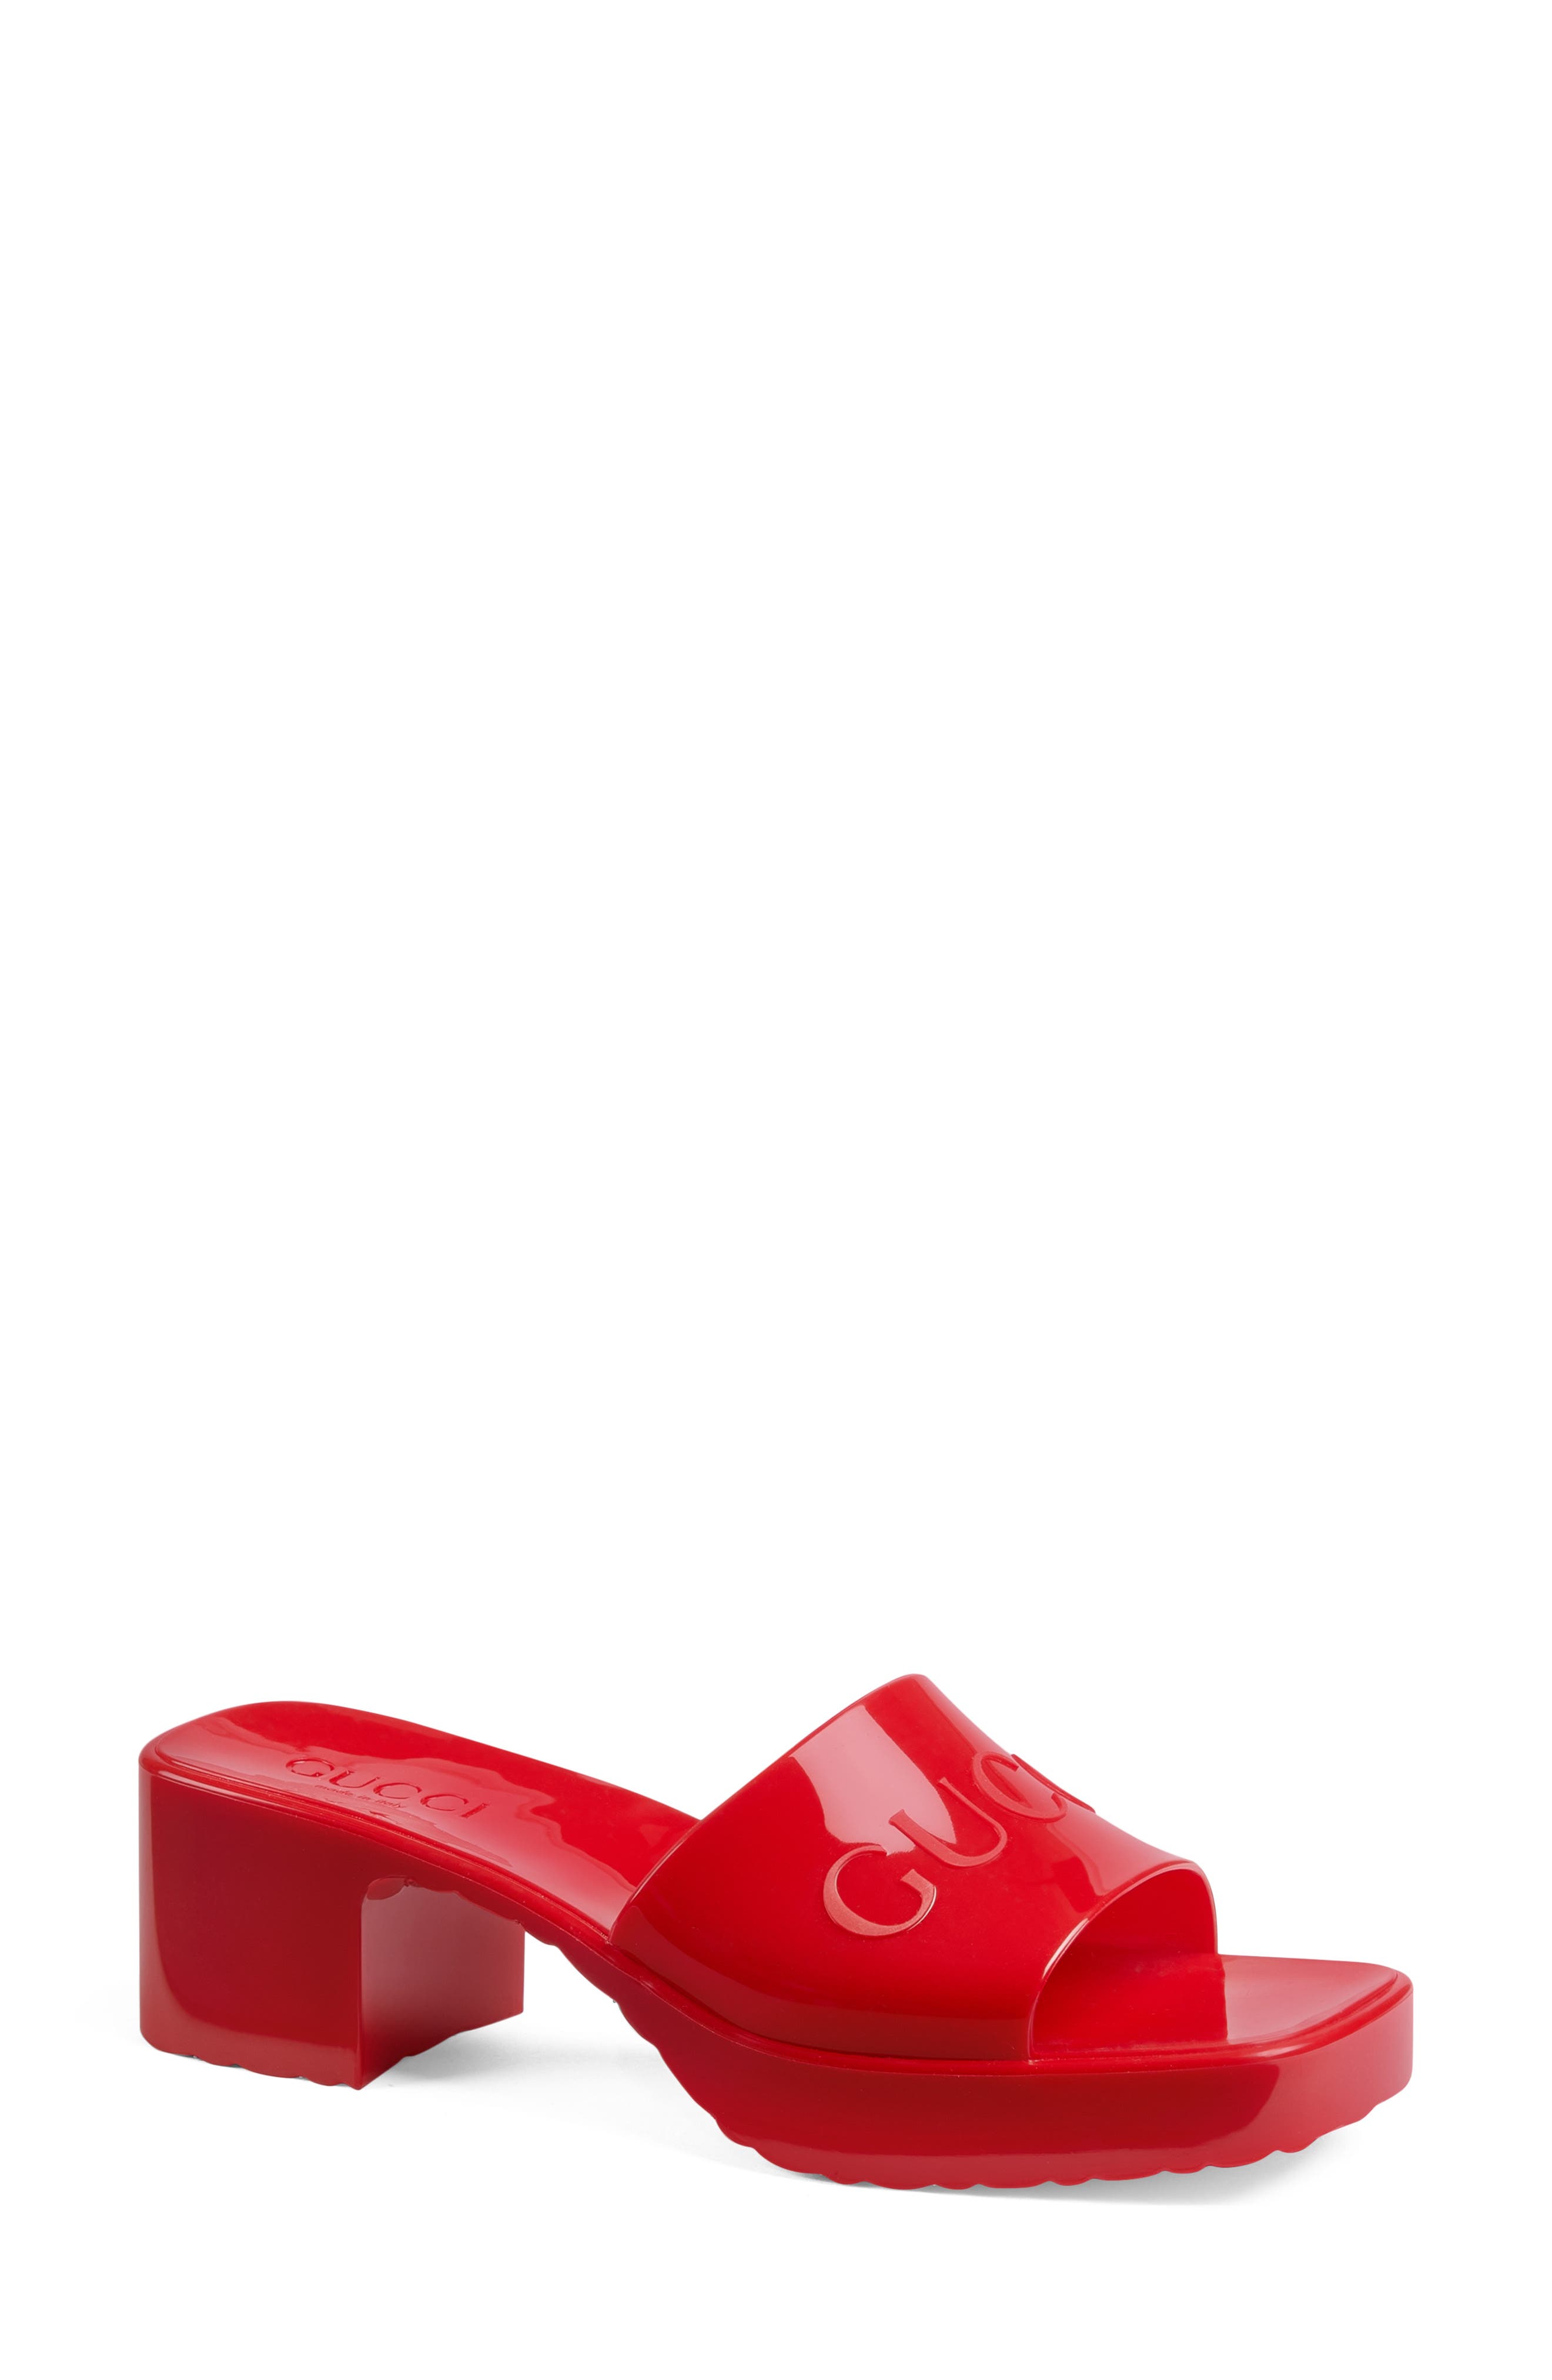 red heels for women